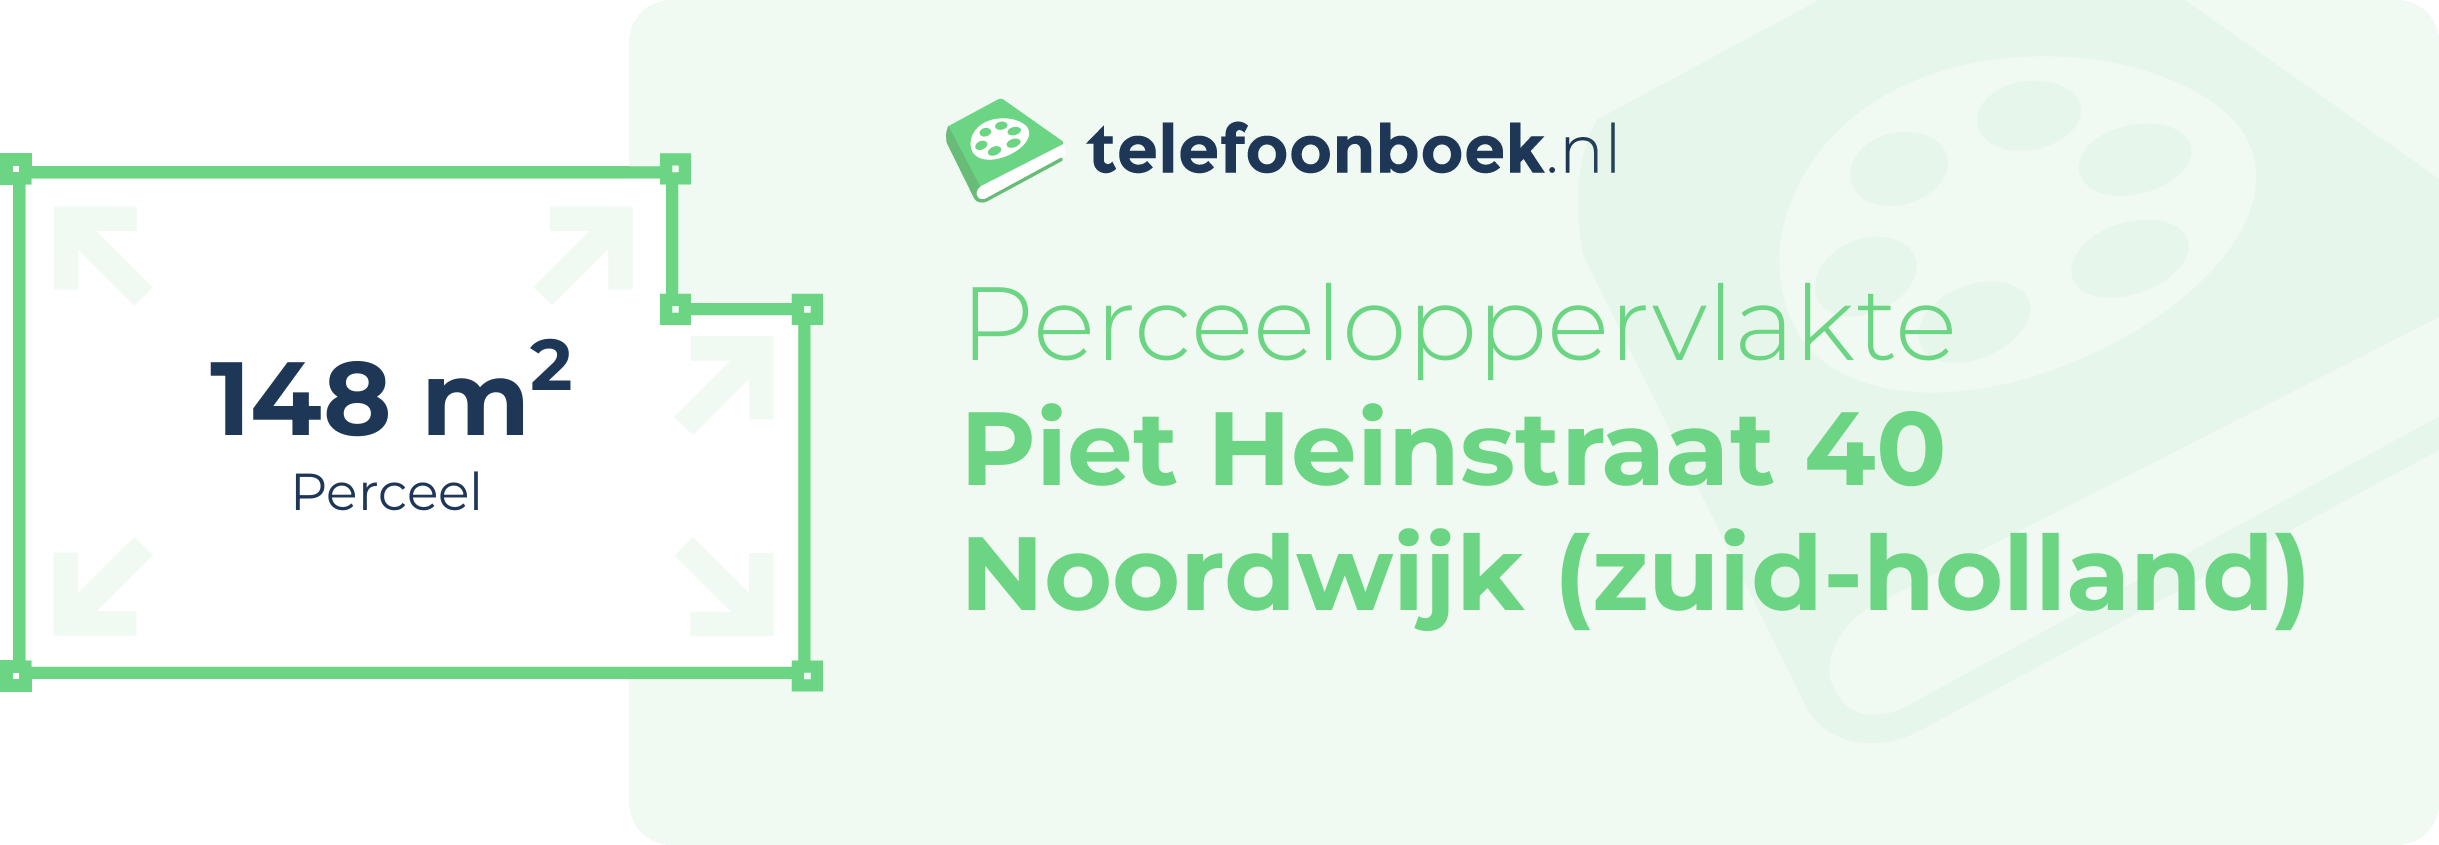 Perceeloppervlakte Piet Heinstraat 40 Noordwijk (Zuid-Holland)